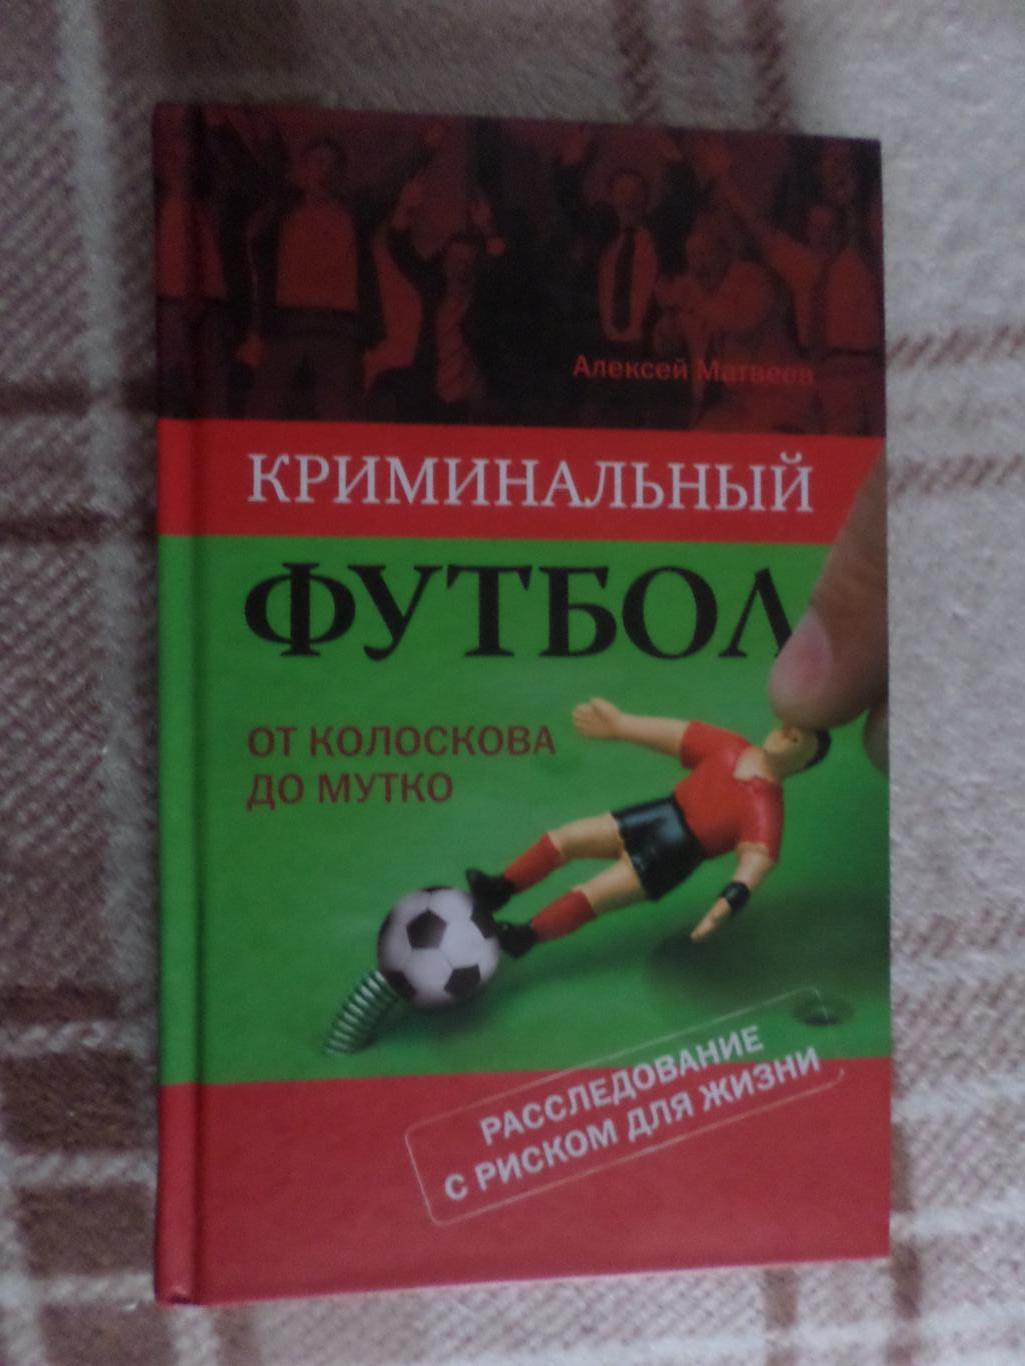 Матвеев - Криминальный футбол от Колоскова до Мутко 2009 г